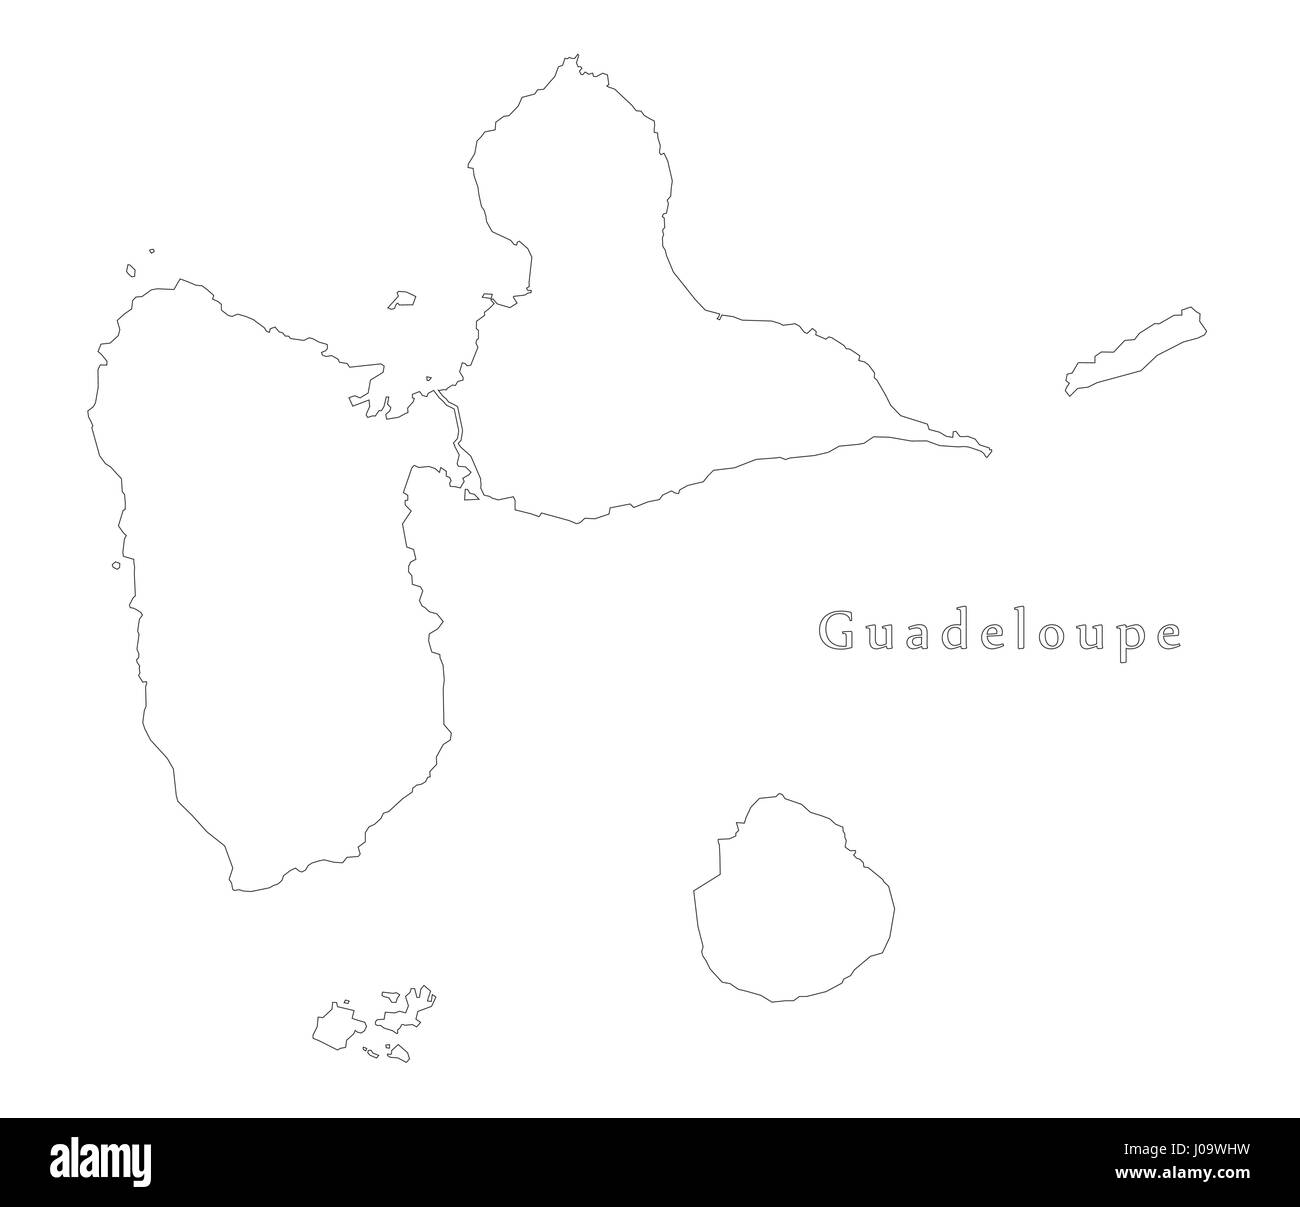 Guadeloupe carte silhouette contour illustration avec frontières détaillées Illustration de Vecteur